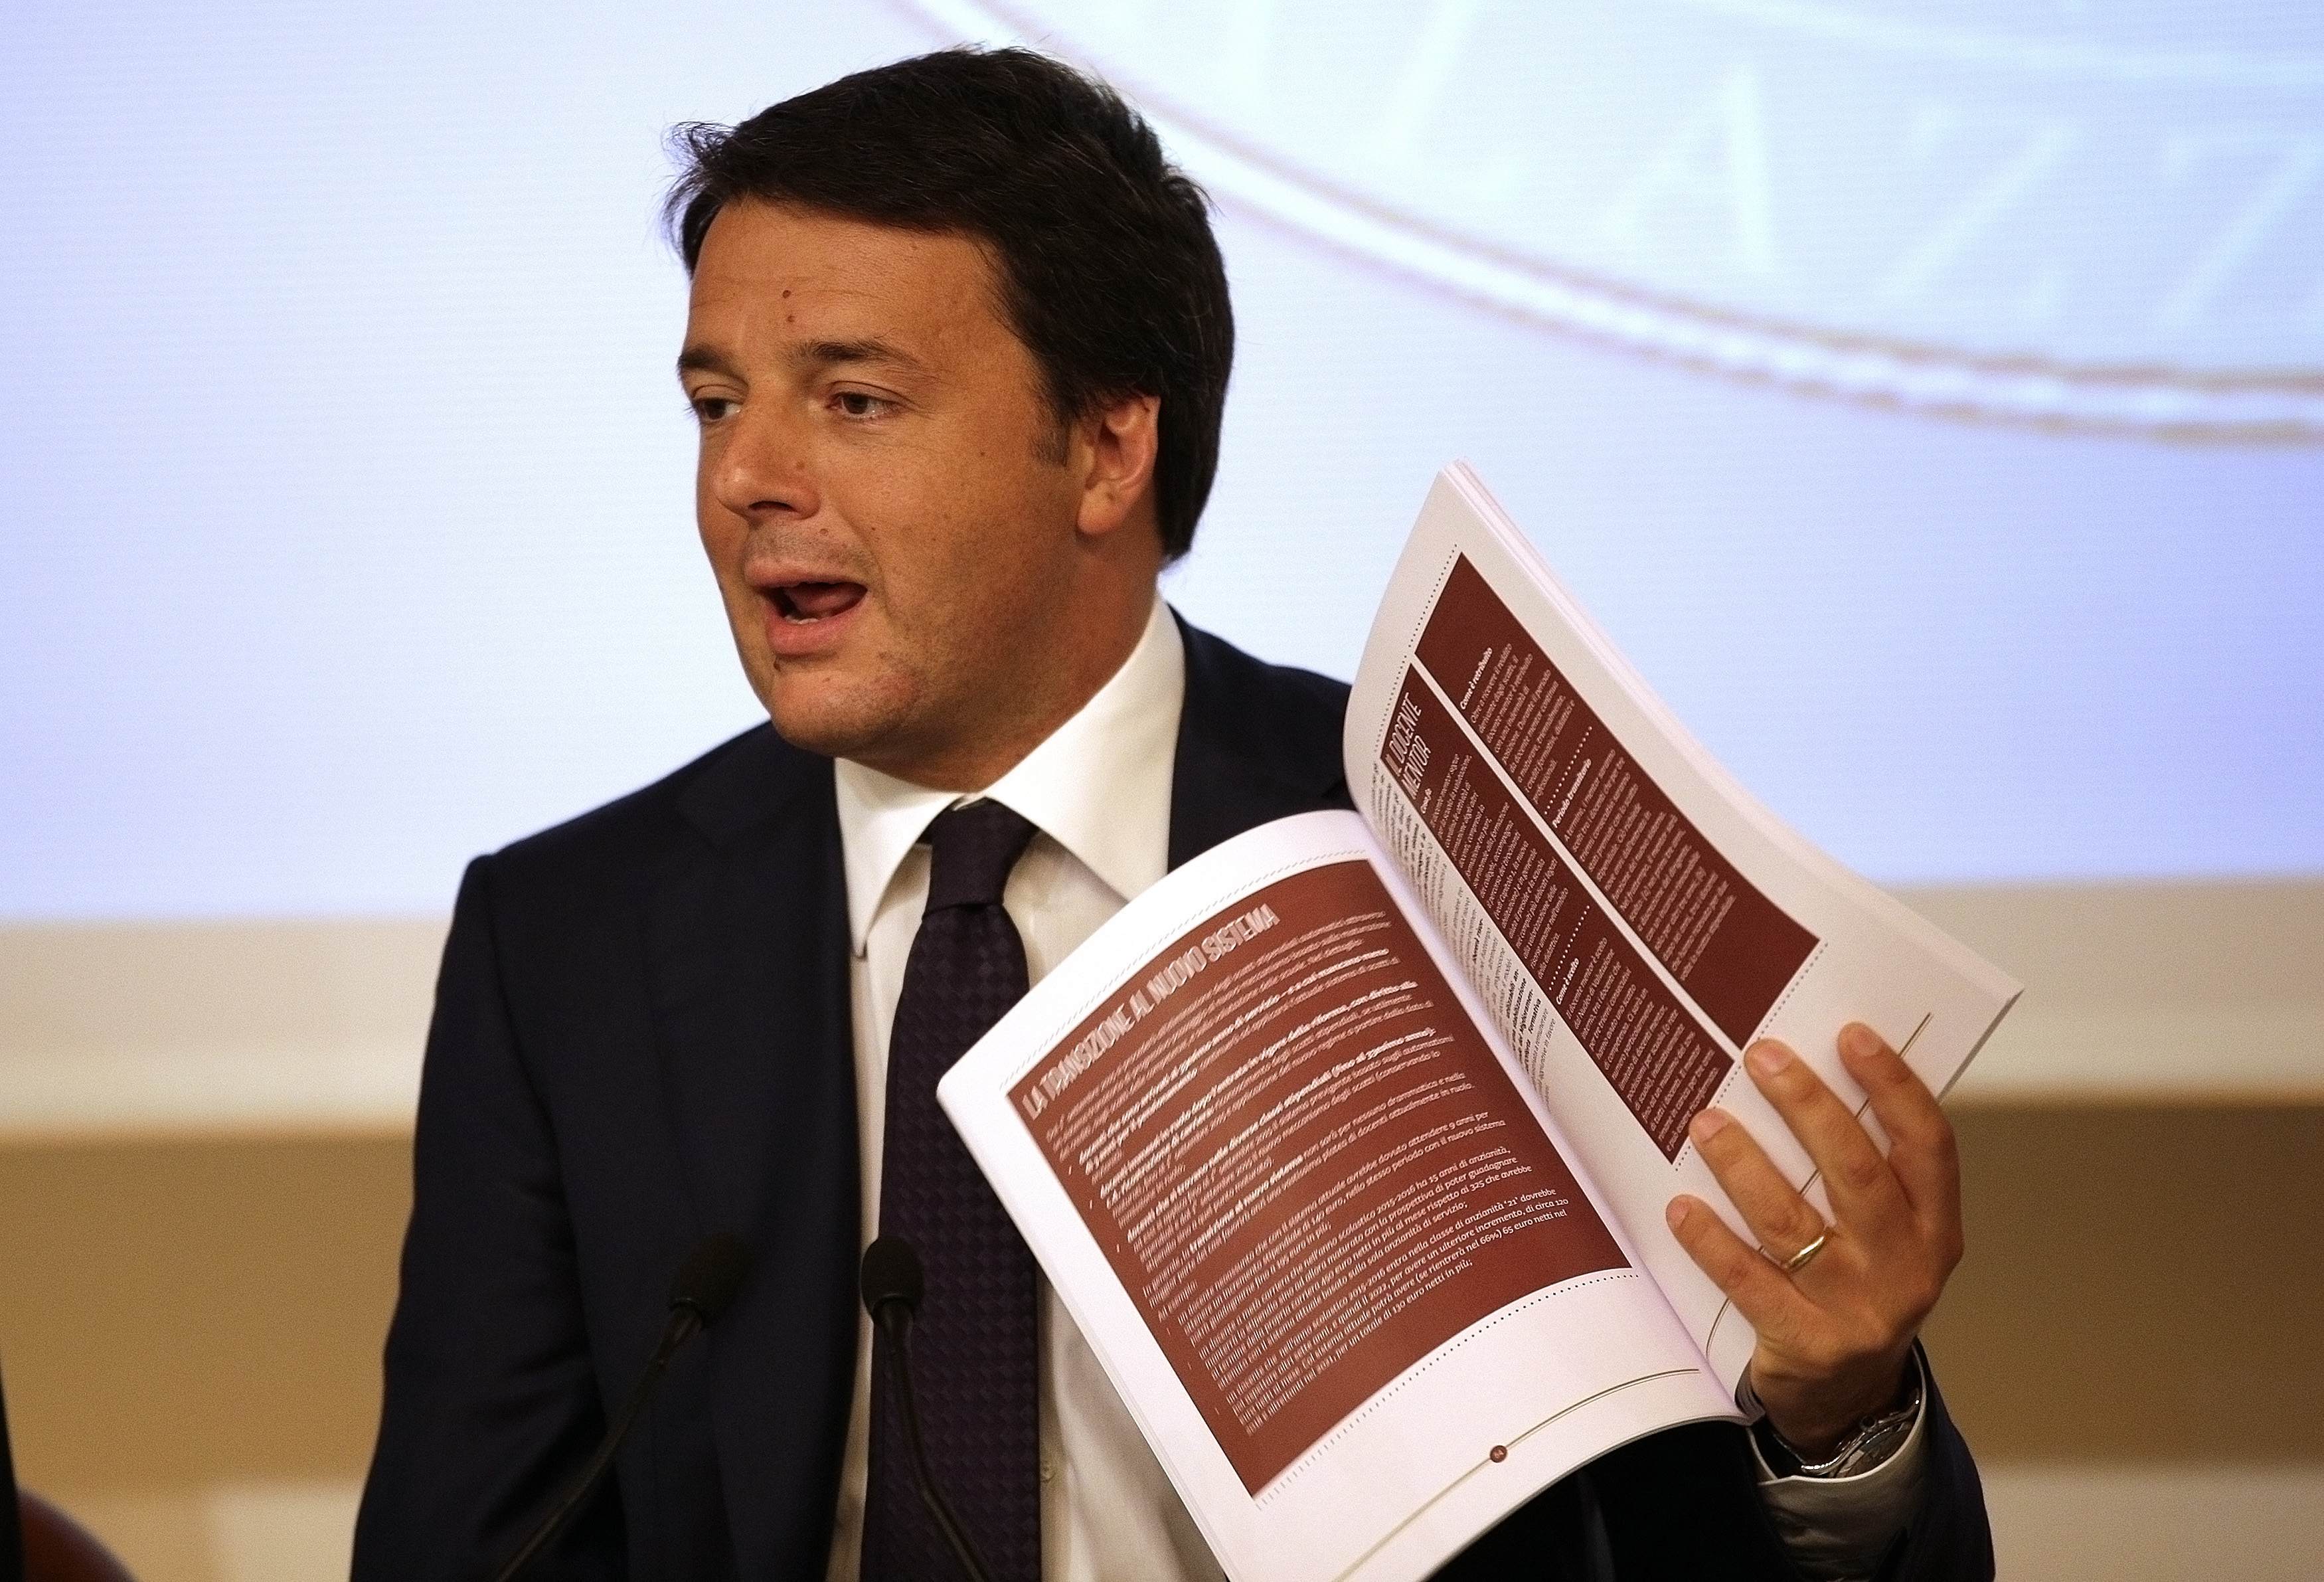  Ο Ρέντσι παρουσίασε ιστοσελίδα της ιταλικής κυβέρνησης αφιερωμένο στο ”πρόγραμμα των χιλίων ημερών”